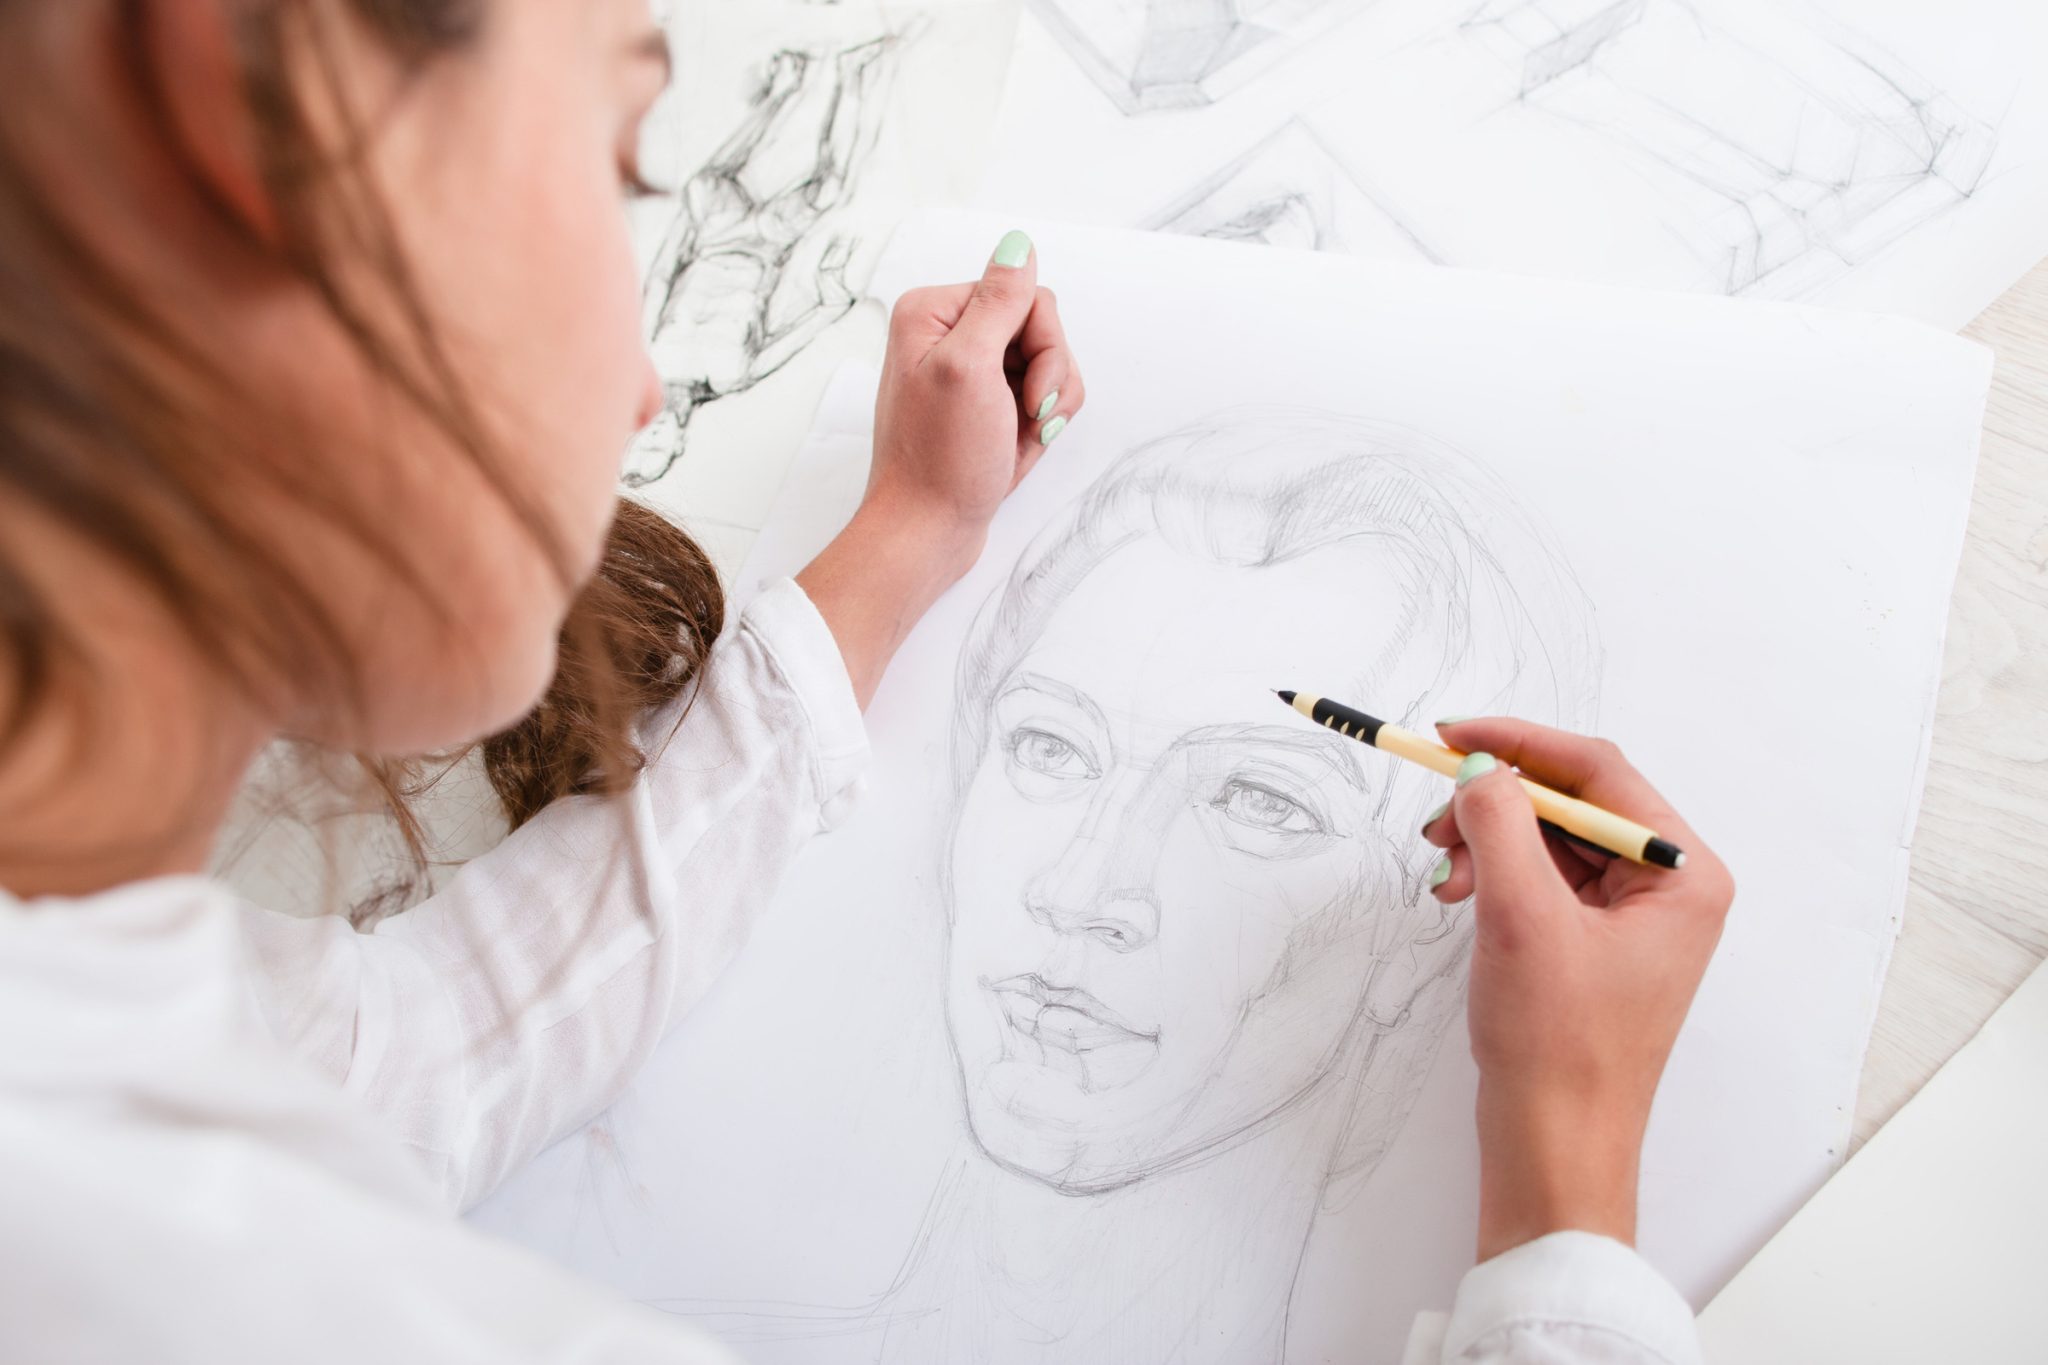 Vernon Community Arts Centre - Portrait & Human Figure Drawing: Ages 11-15